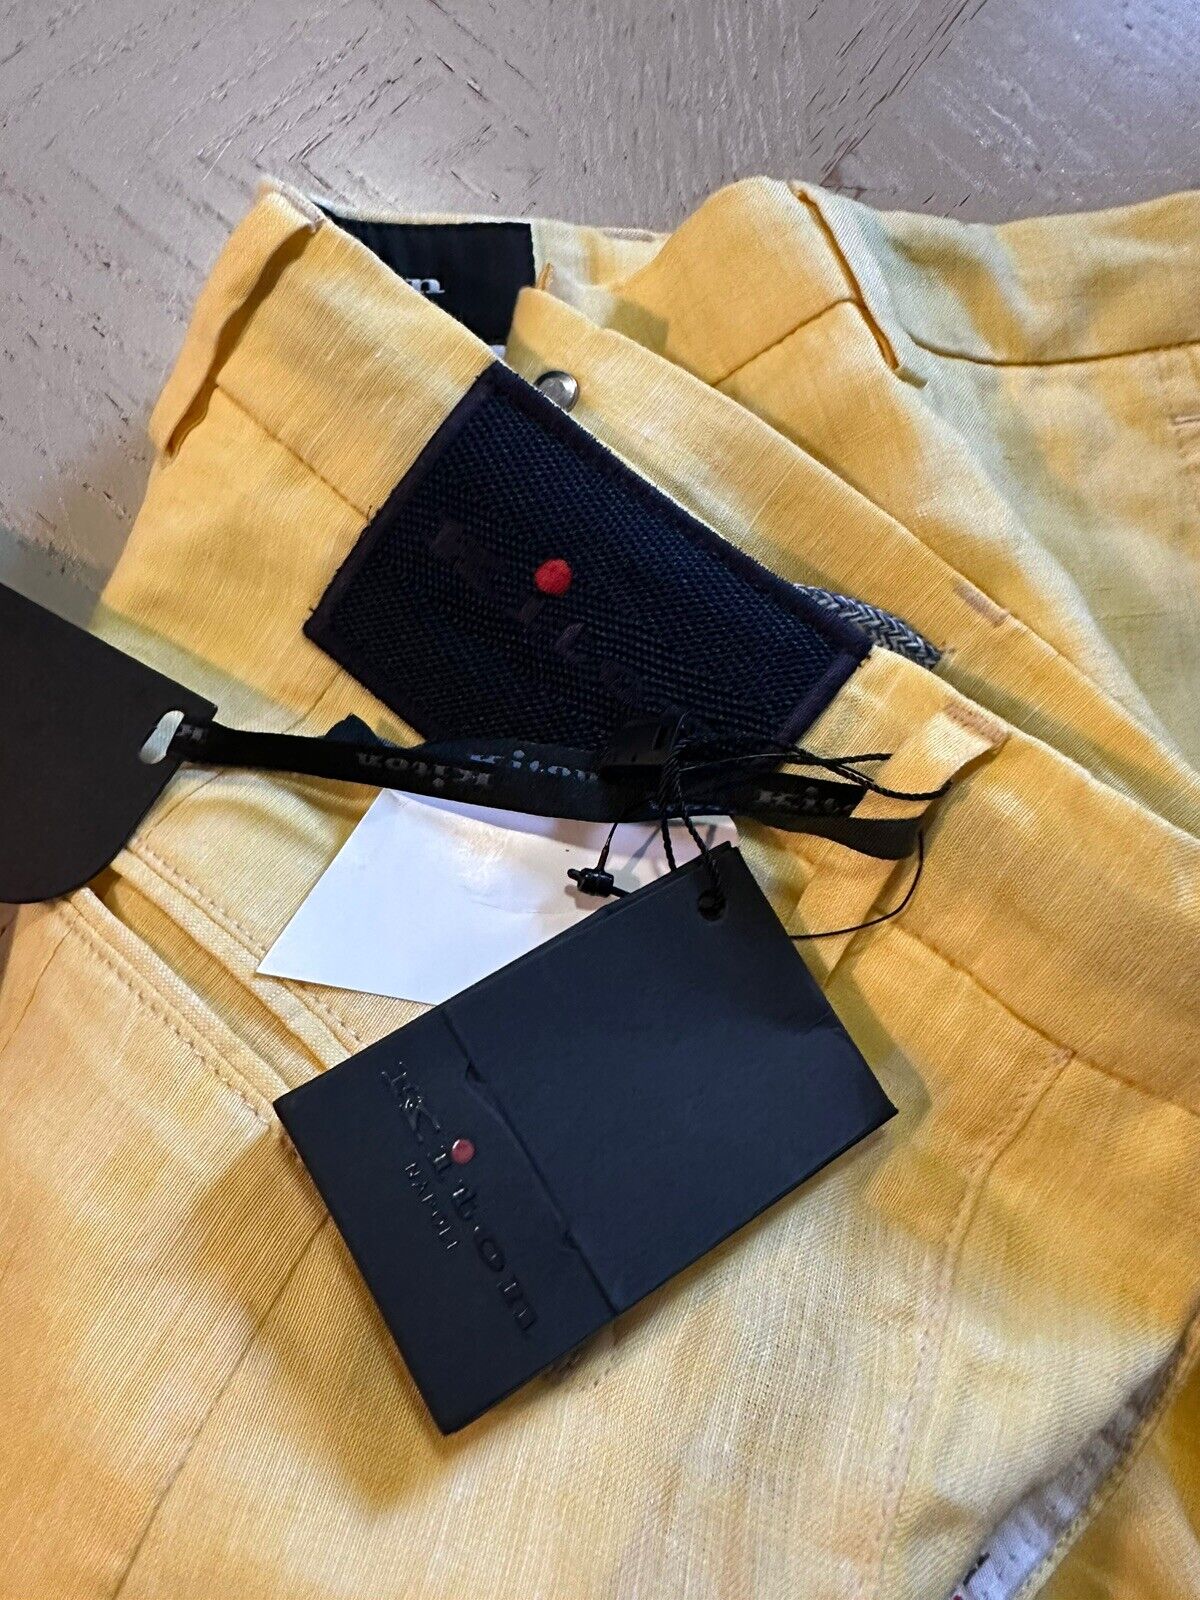 NWT $995 Kiton Mens Linen Short Pants Color Yellow Size 34 US/50 Eu Italy